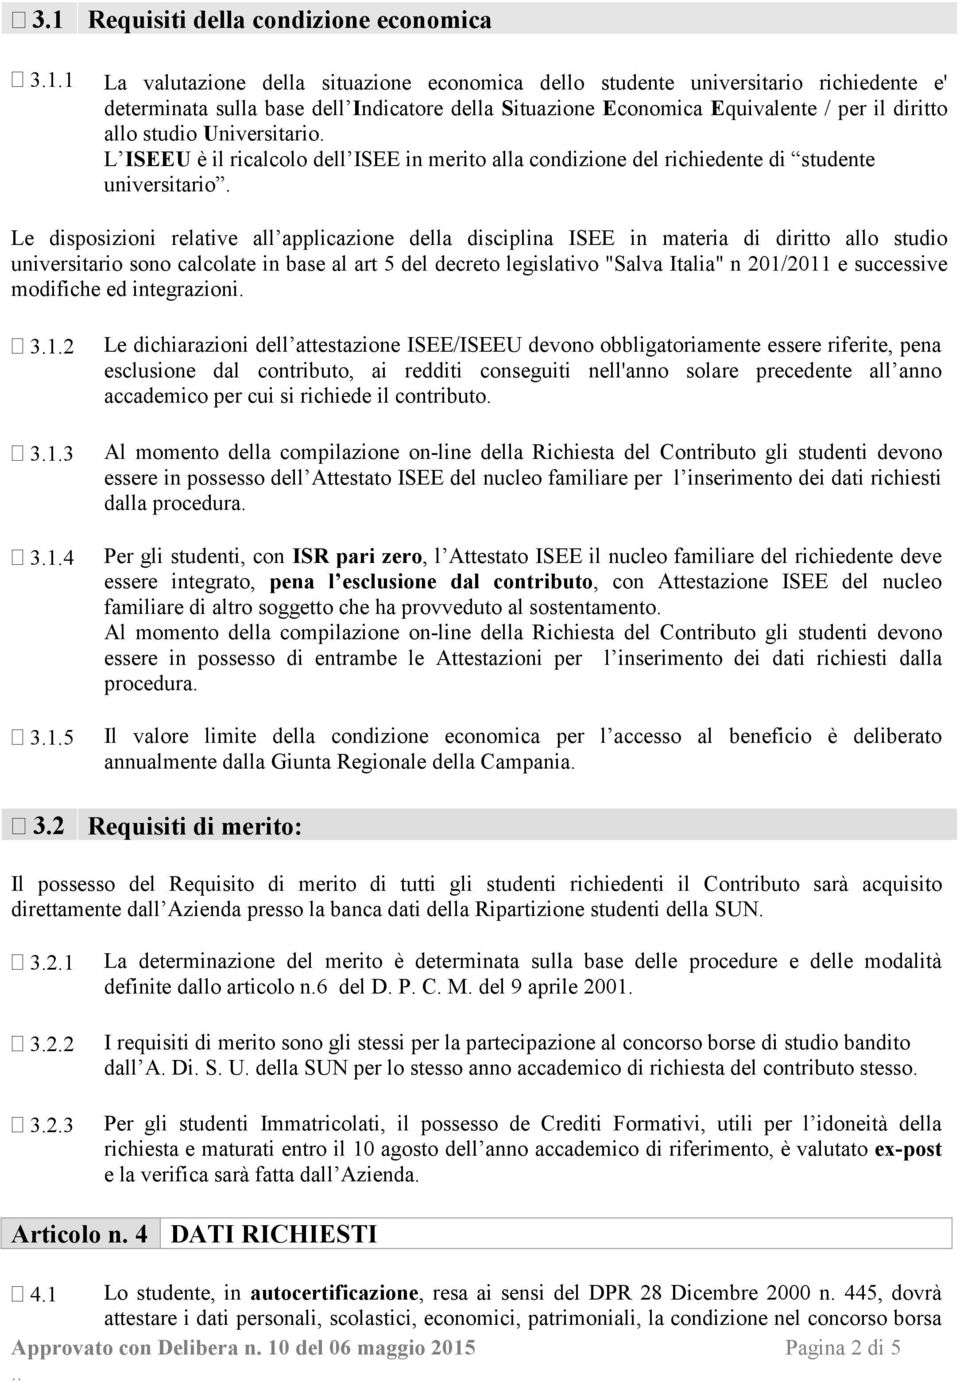 Le disposizioni relative all applicazione della disciplina ISEE in materia di diritto allo studio universitario sono calcolate in base al art 5 del decreto legislativo "Salva Italia" n 201/2011 e